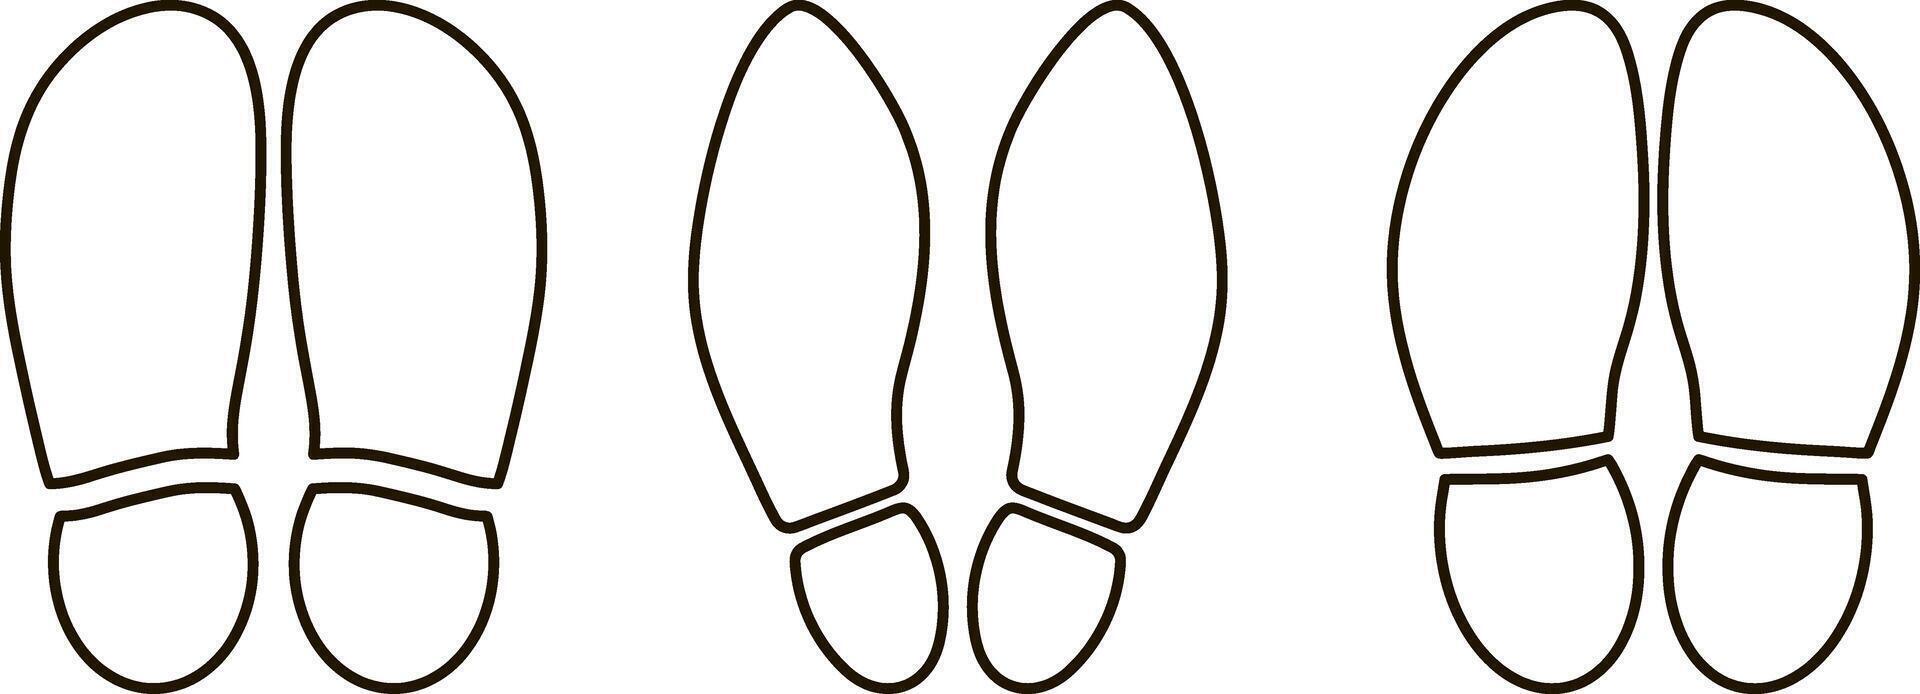 pé impressão pé sapatos ícone humano pegada silhueta footcare viagem descalço vetor